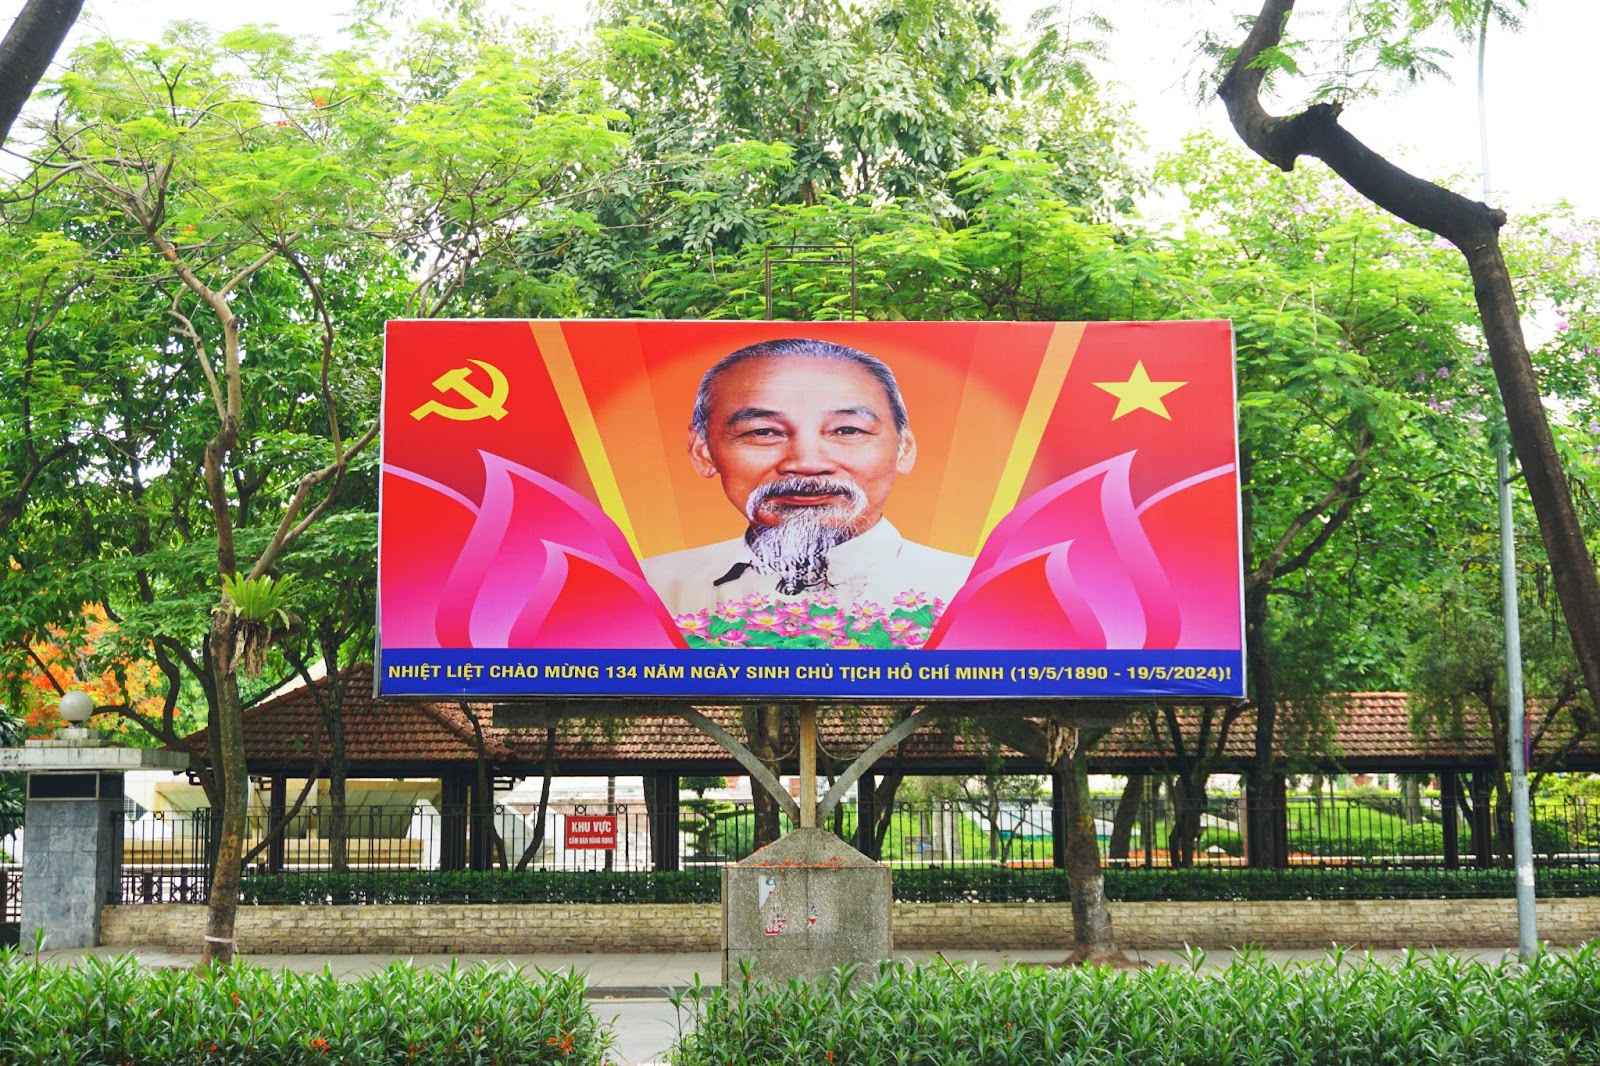 Hà Nội rợp sắc cờ hoa kỷ niệm ngày sinh Chủ tịch Hồ Chí Minh - Ảnh 4.